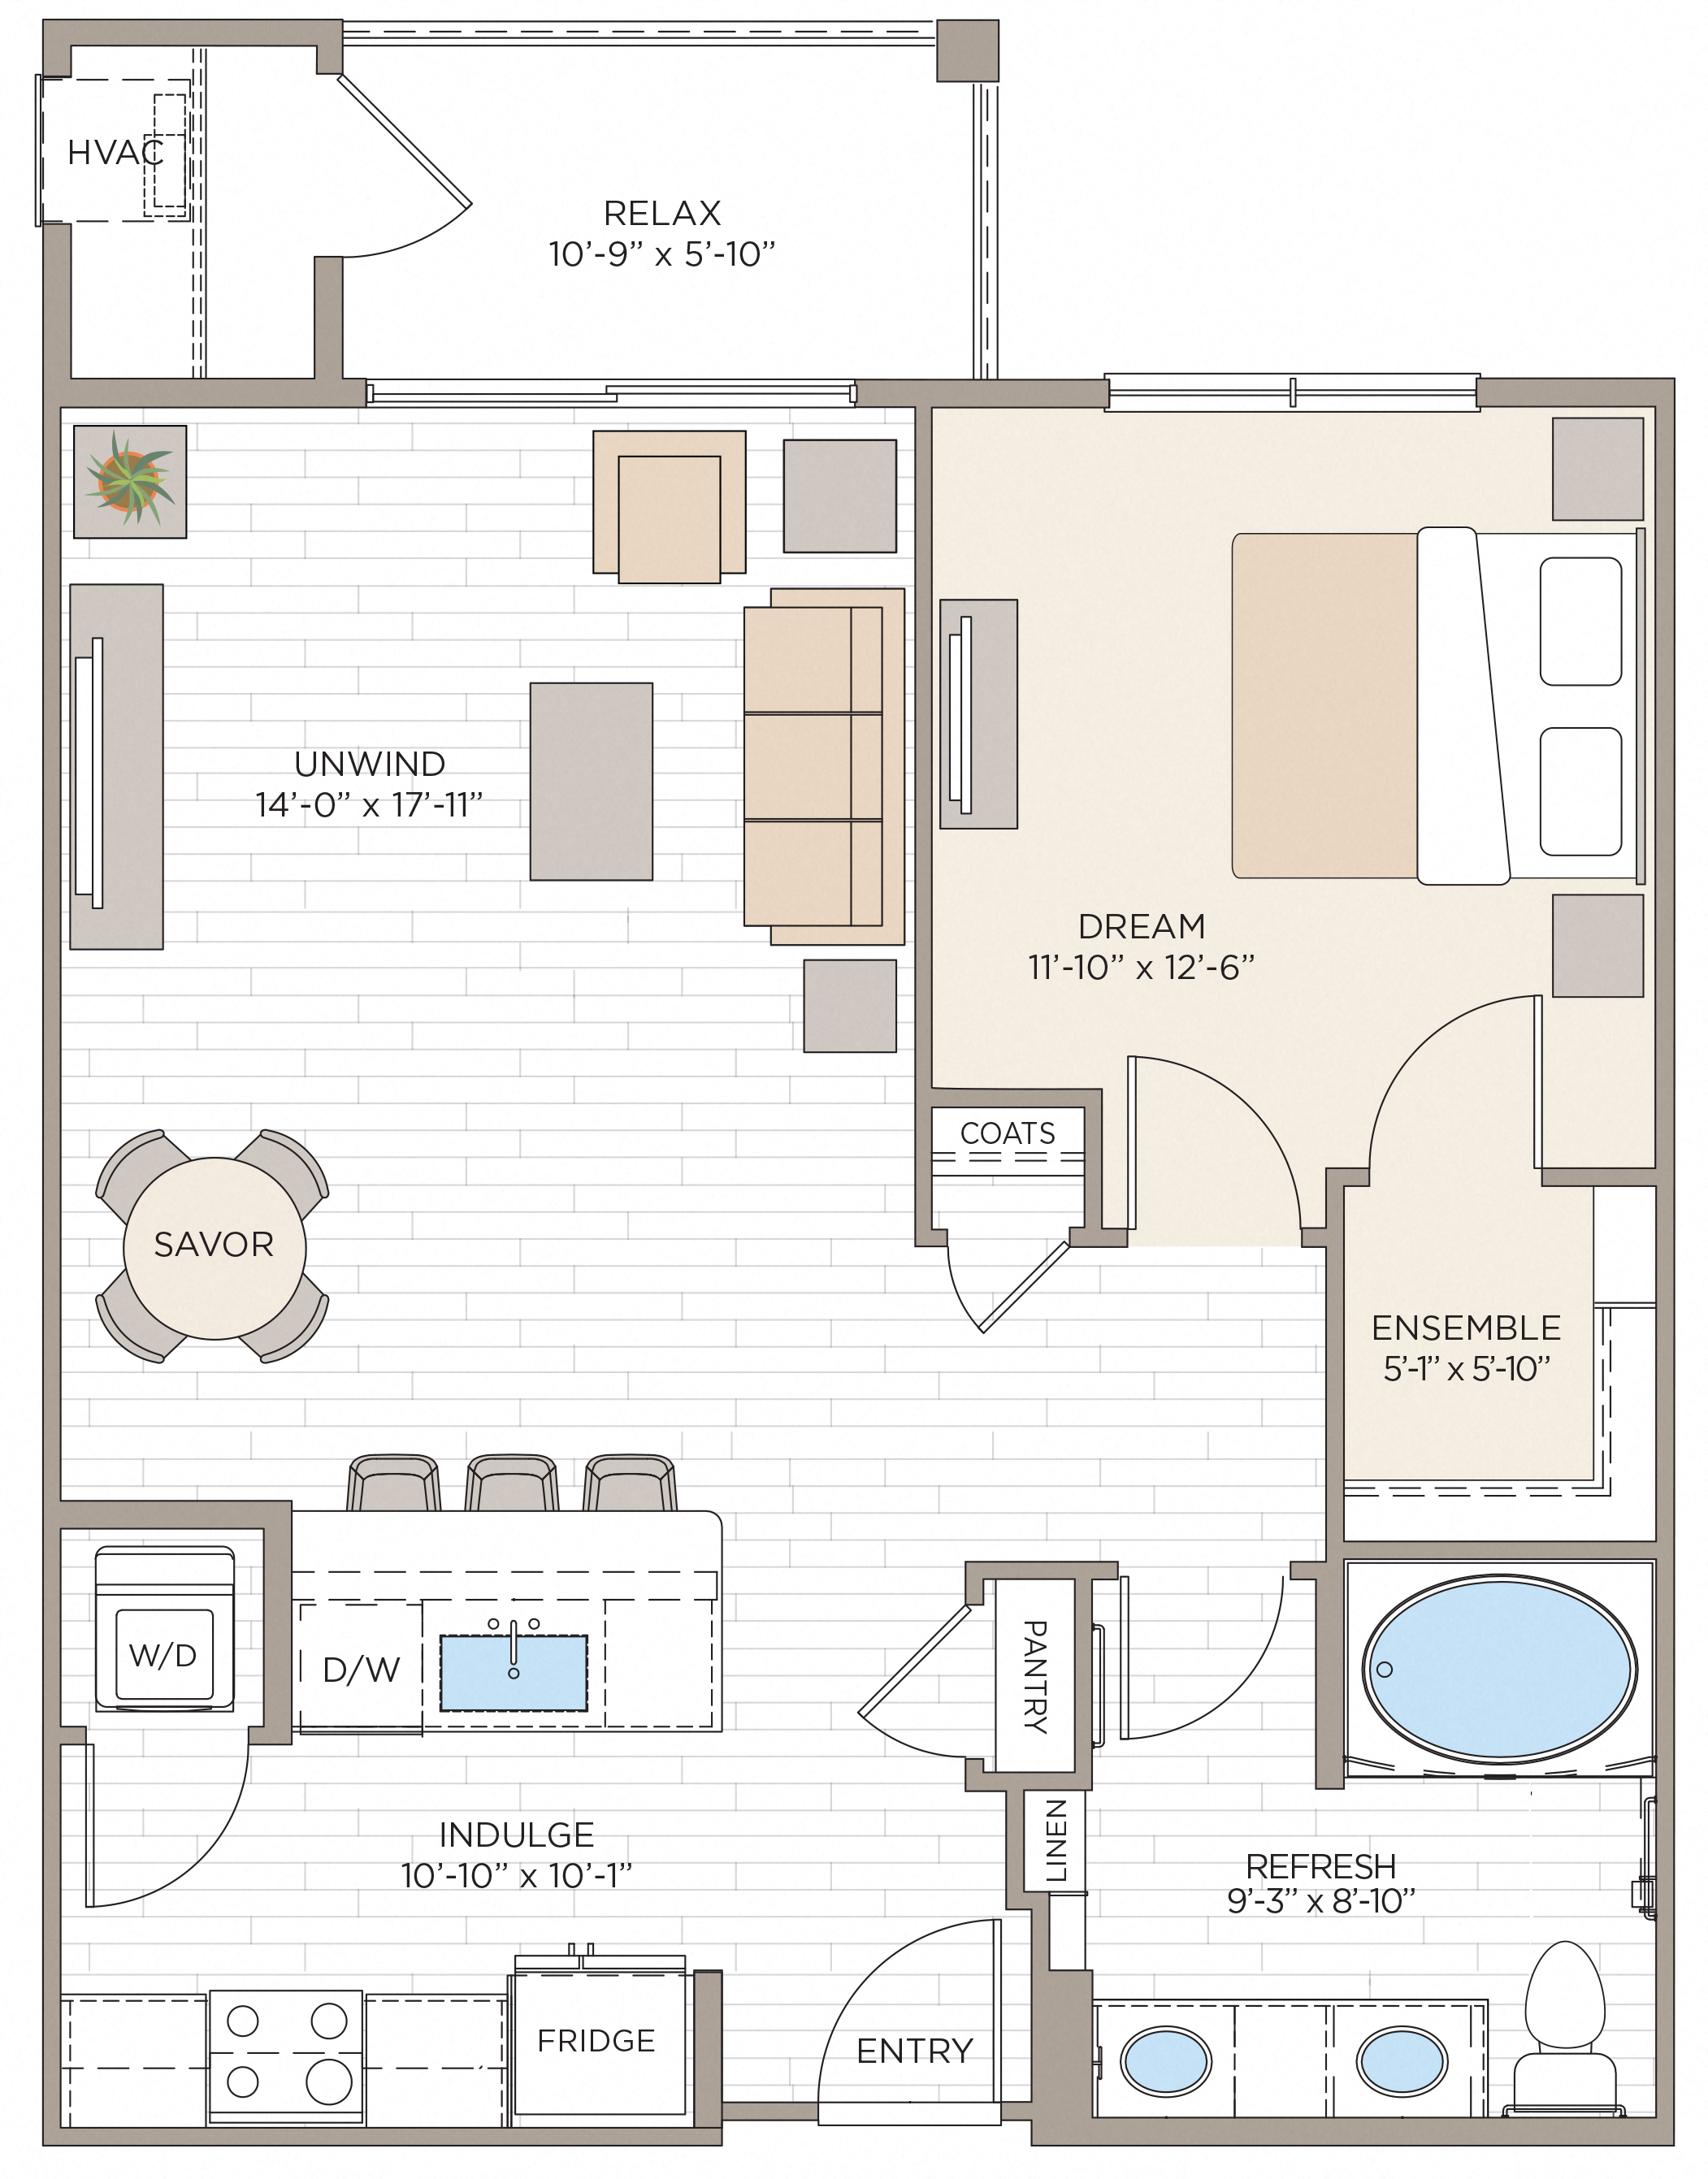 Floorplan for Apartment #14227, 1 bedroom unit at Halstead Maynard Crossing